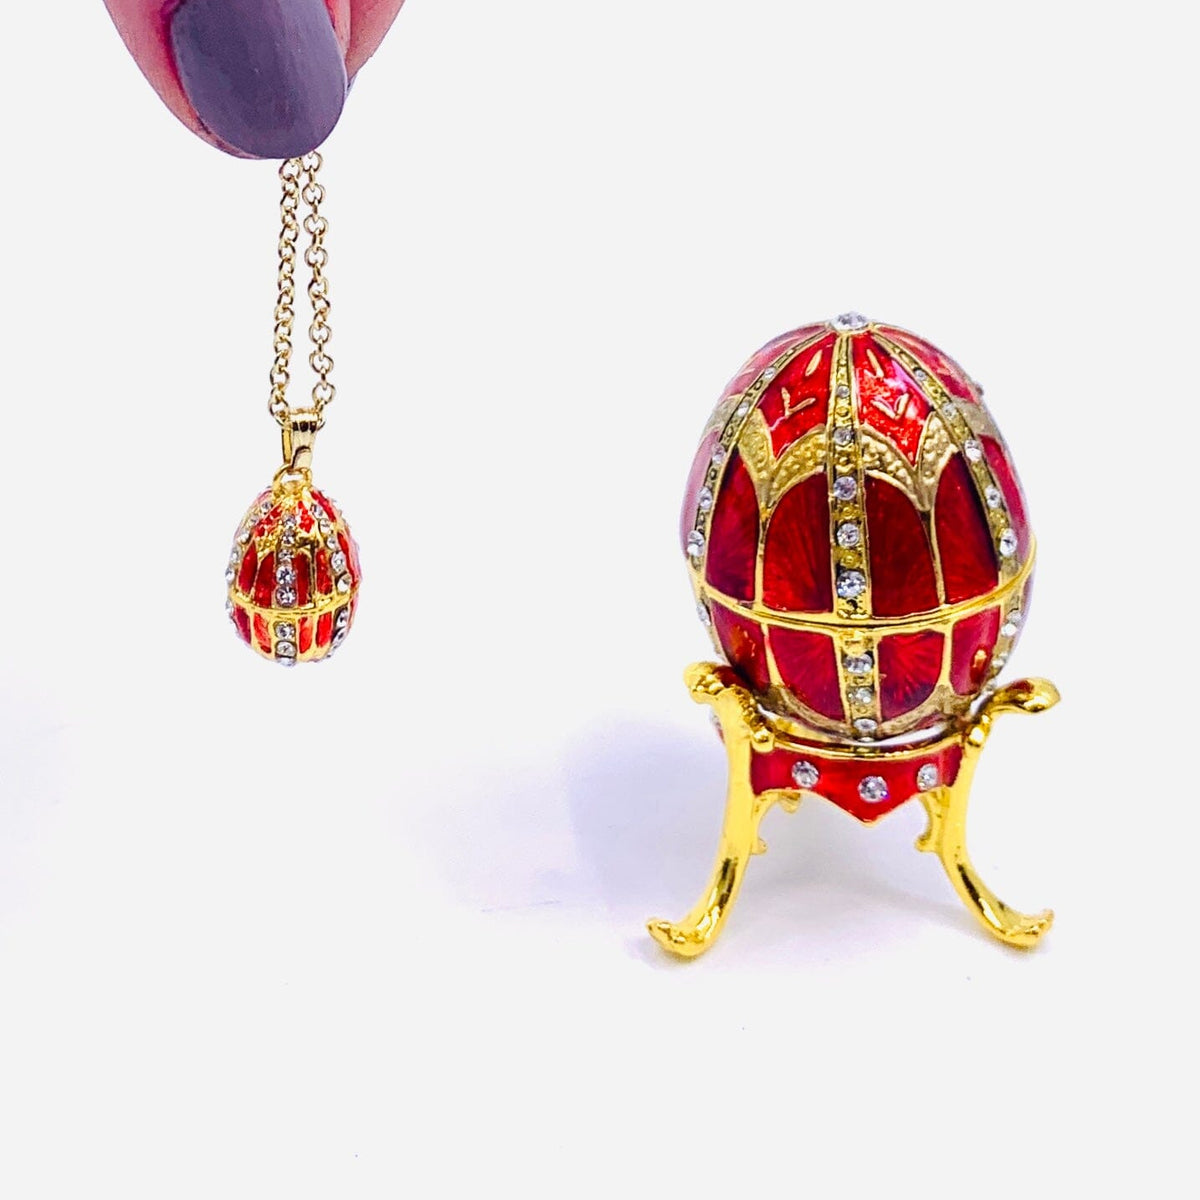 Bejeweled Enamel Trinket Box and Pendant 24, Red Faberge Style Egg Decor Kubla Craft 